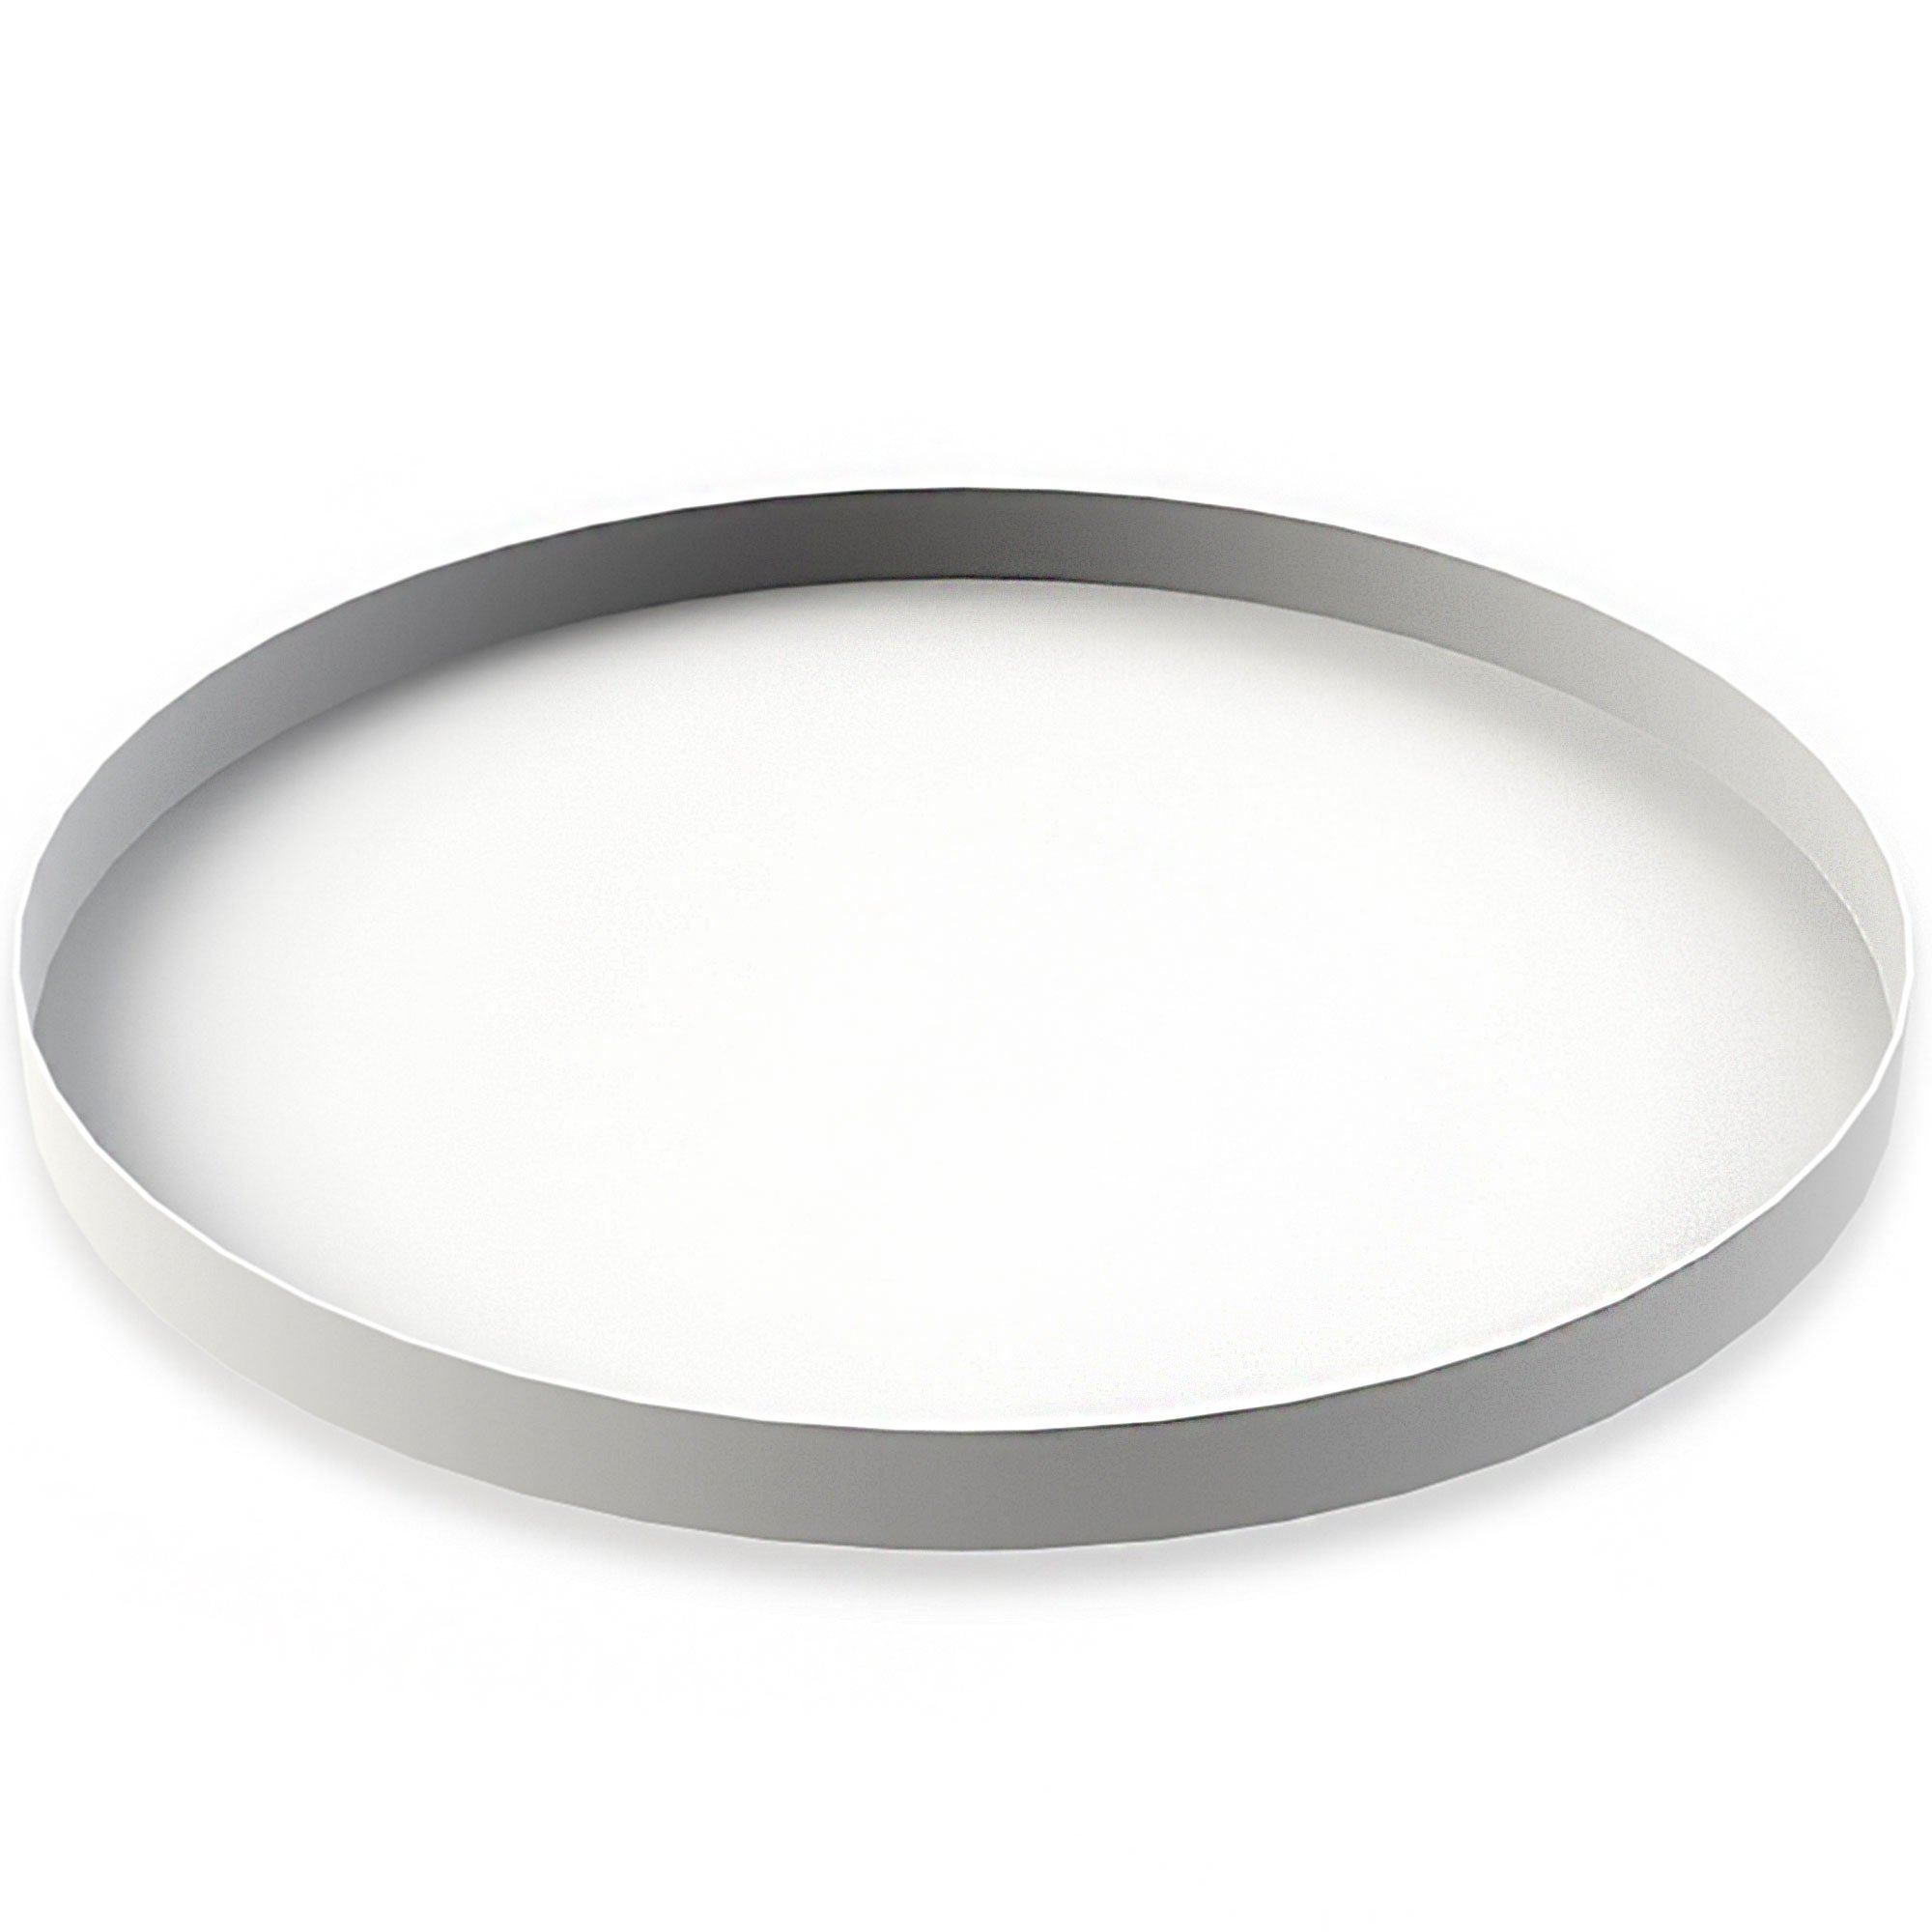 Cooee Design Circle bakke, 30 cm, hvid